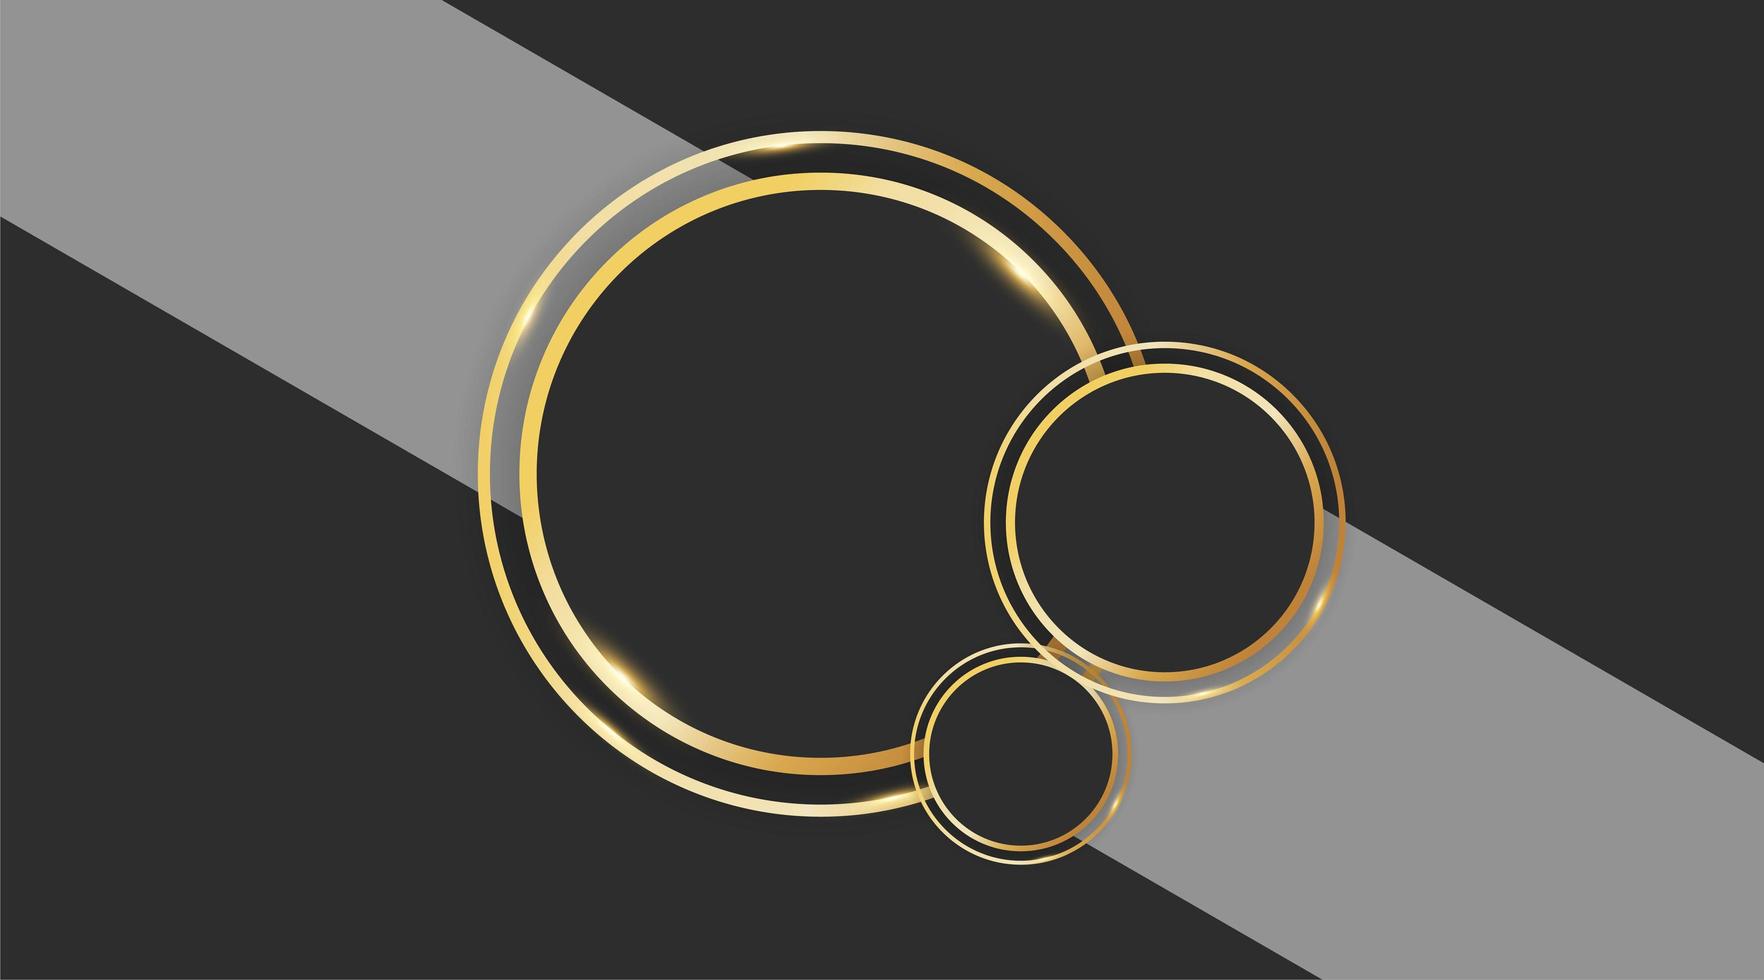 disegno vettoriale cerchio astratto con anello d'oro su sfondo grigio